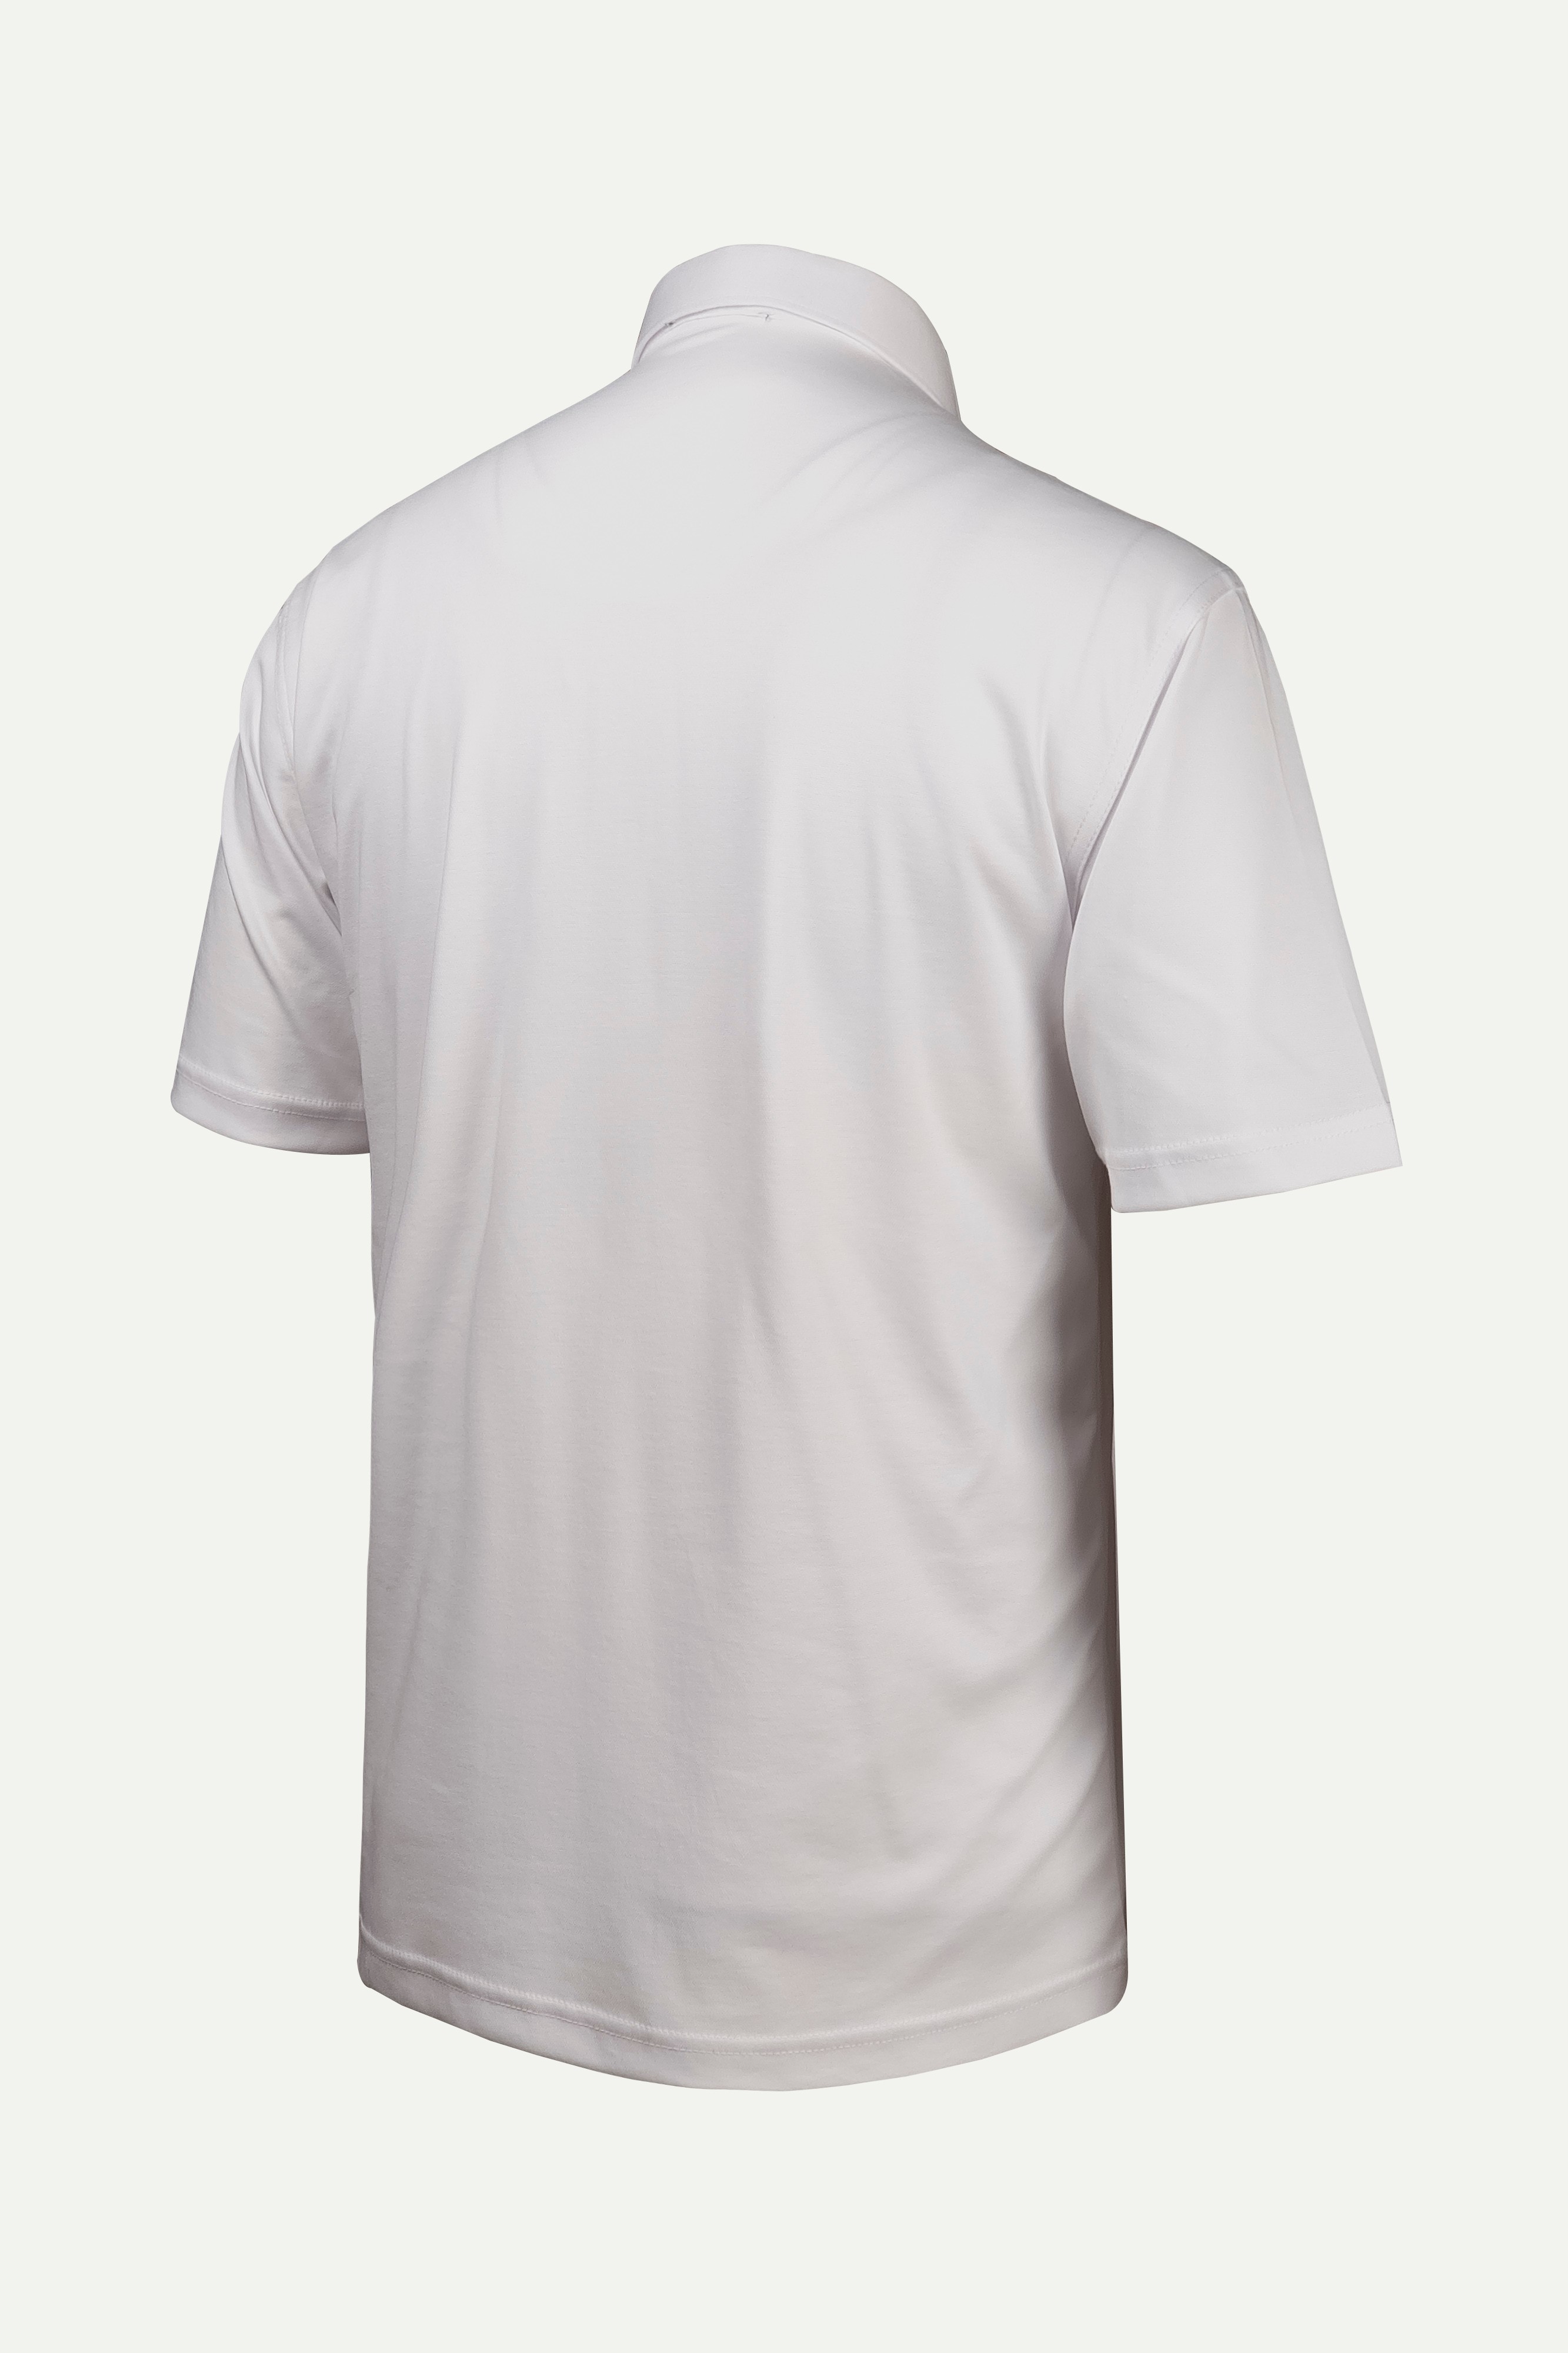 Çizgi Triko Erkek Gömlek Yaka Düğmeli Cepli Tişört Klasik Kalıp - BEYAZ